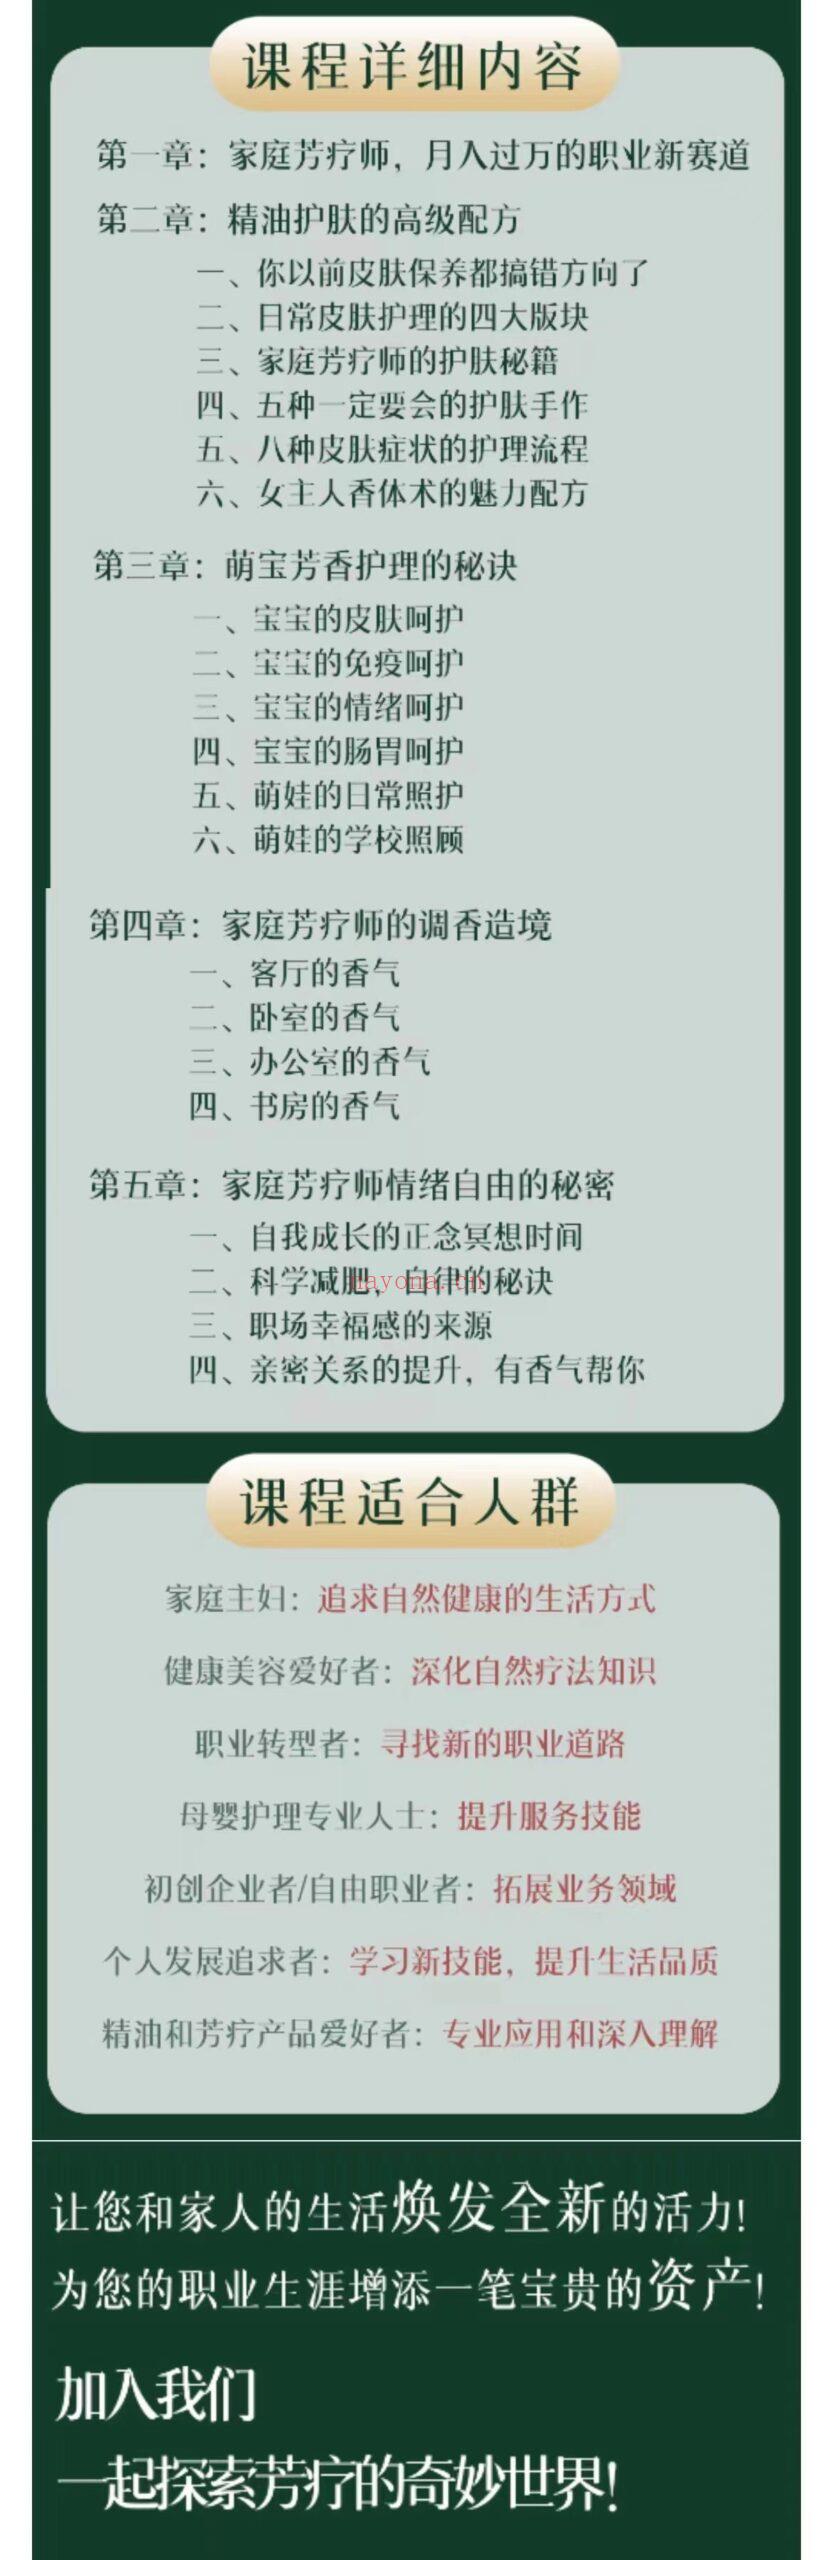 (芳香疗愈)天香山学院 家庭芳疗师认证应用与创收课